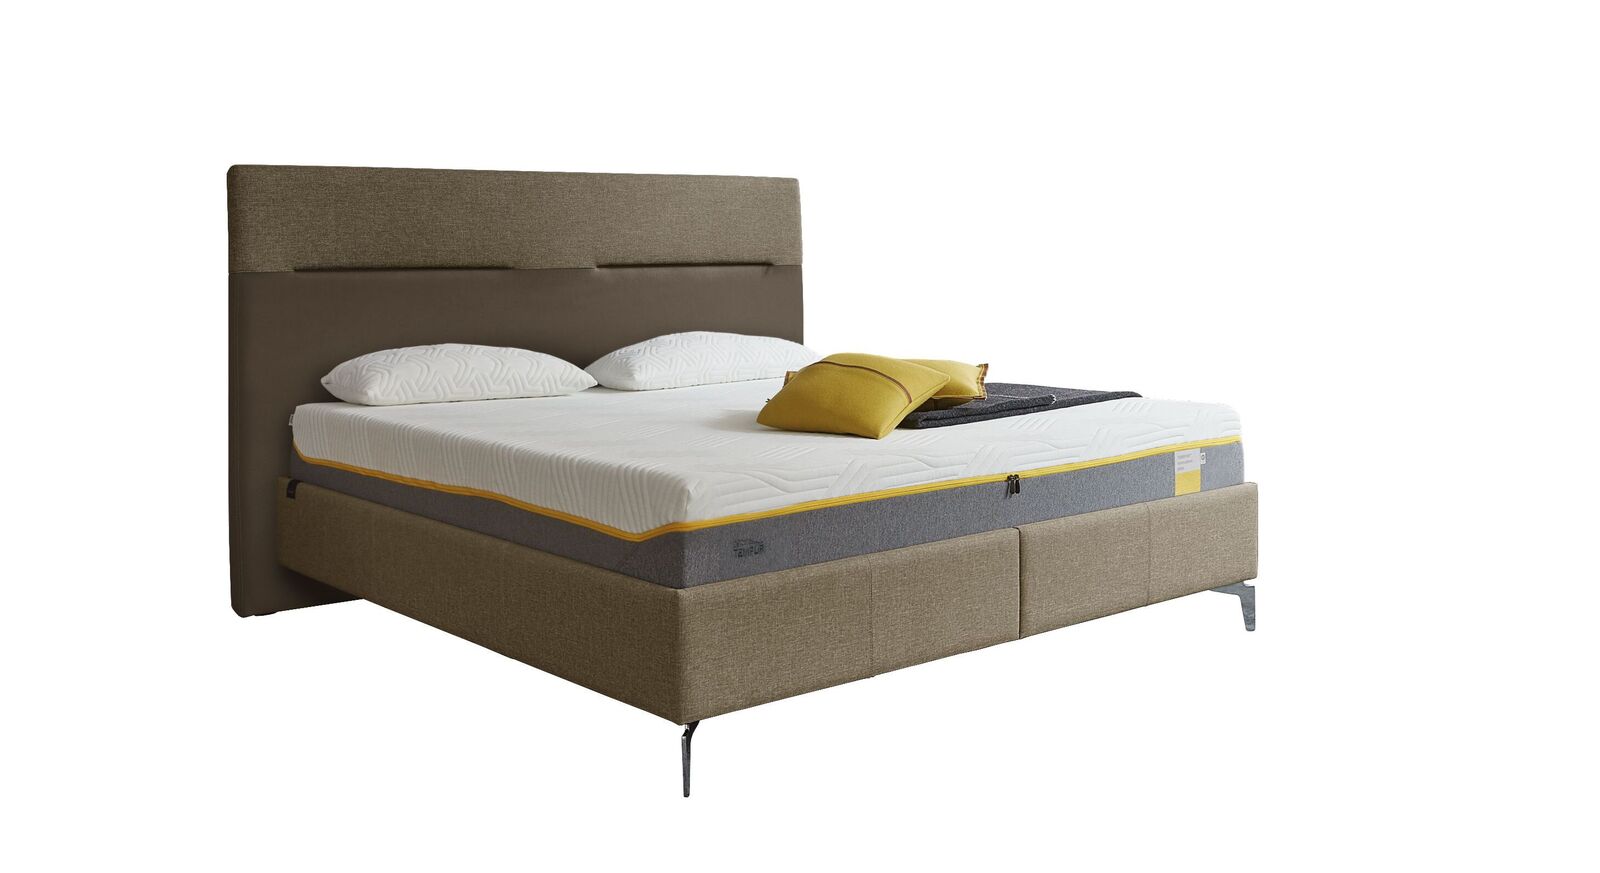 TEMPUR Bett Relax Texture mit Bezug in Webstoff und Kunstleder in Khaki